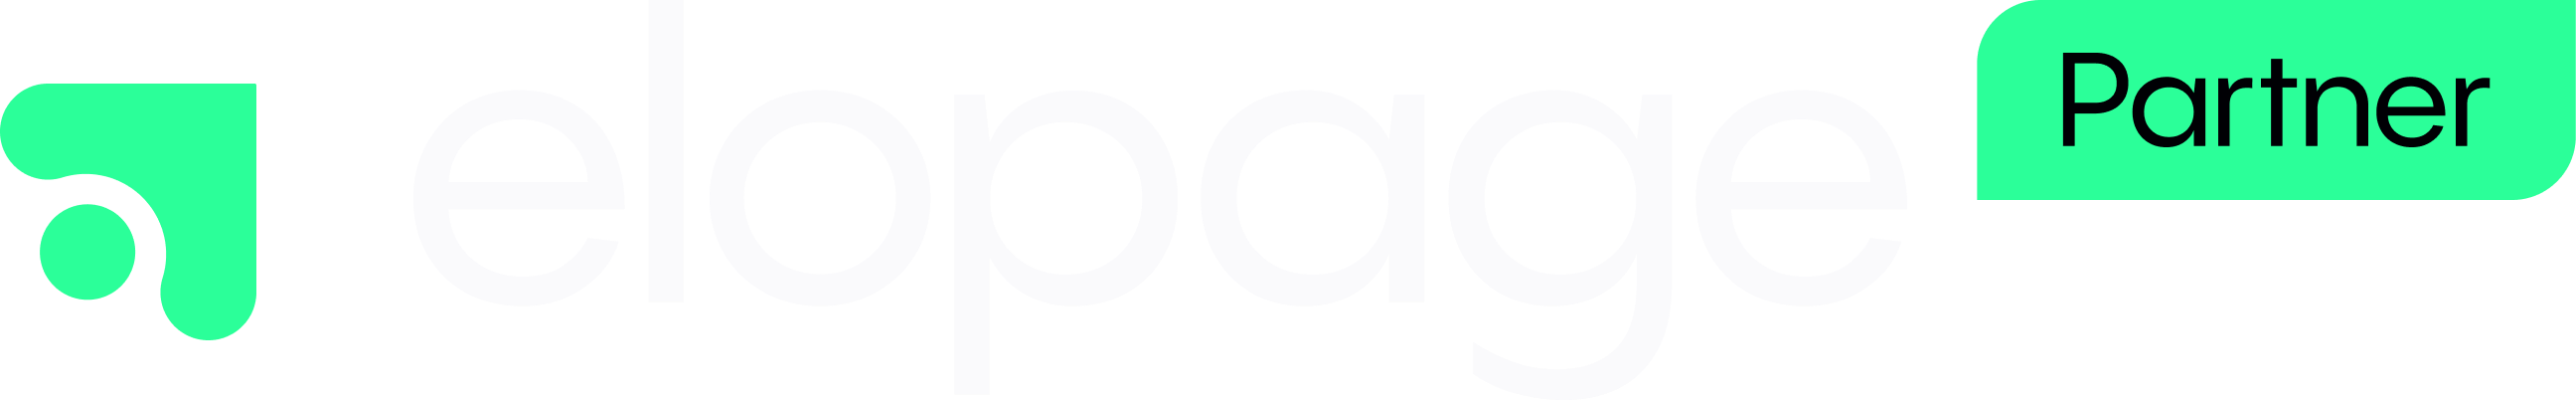 elopage Partner Logo